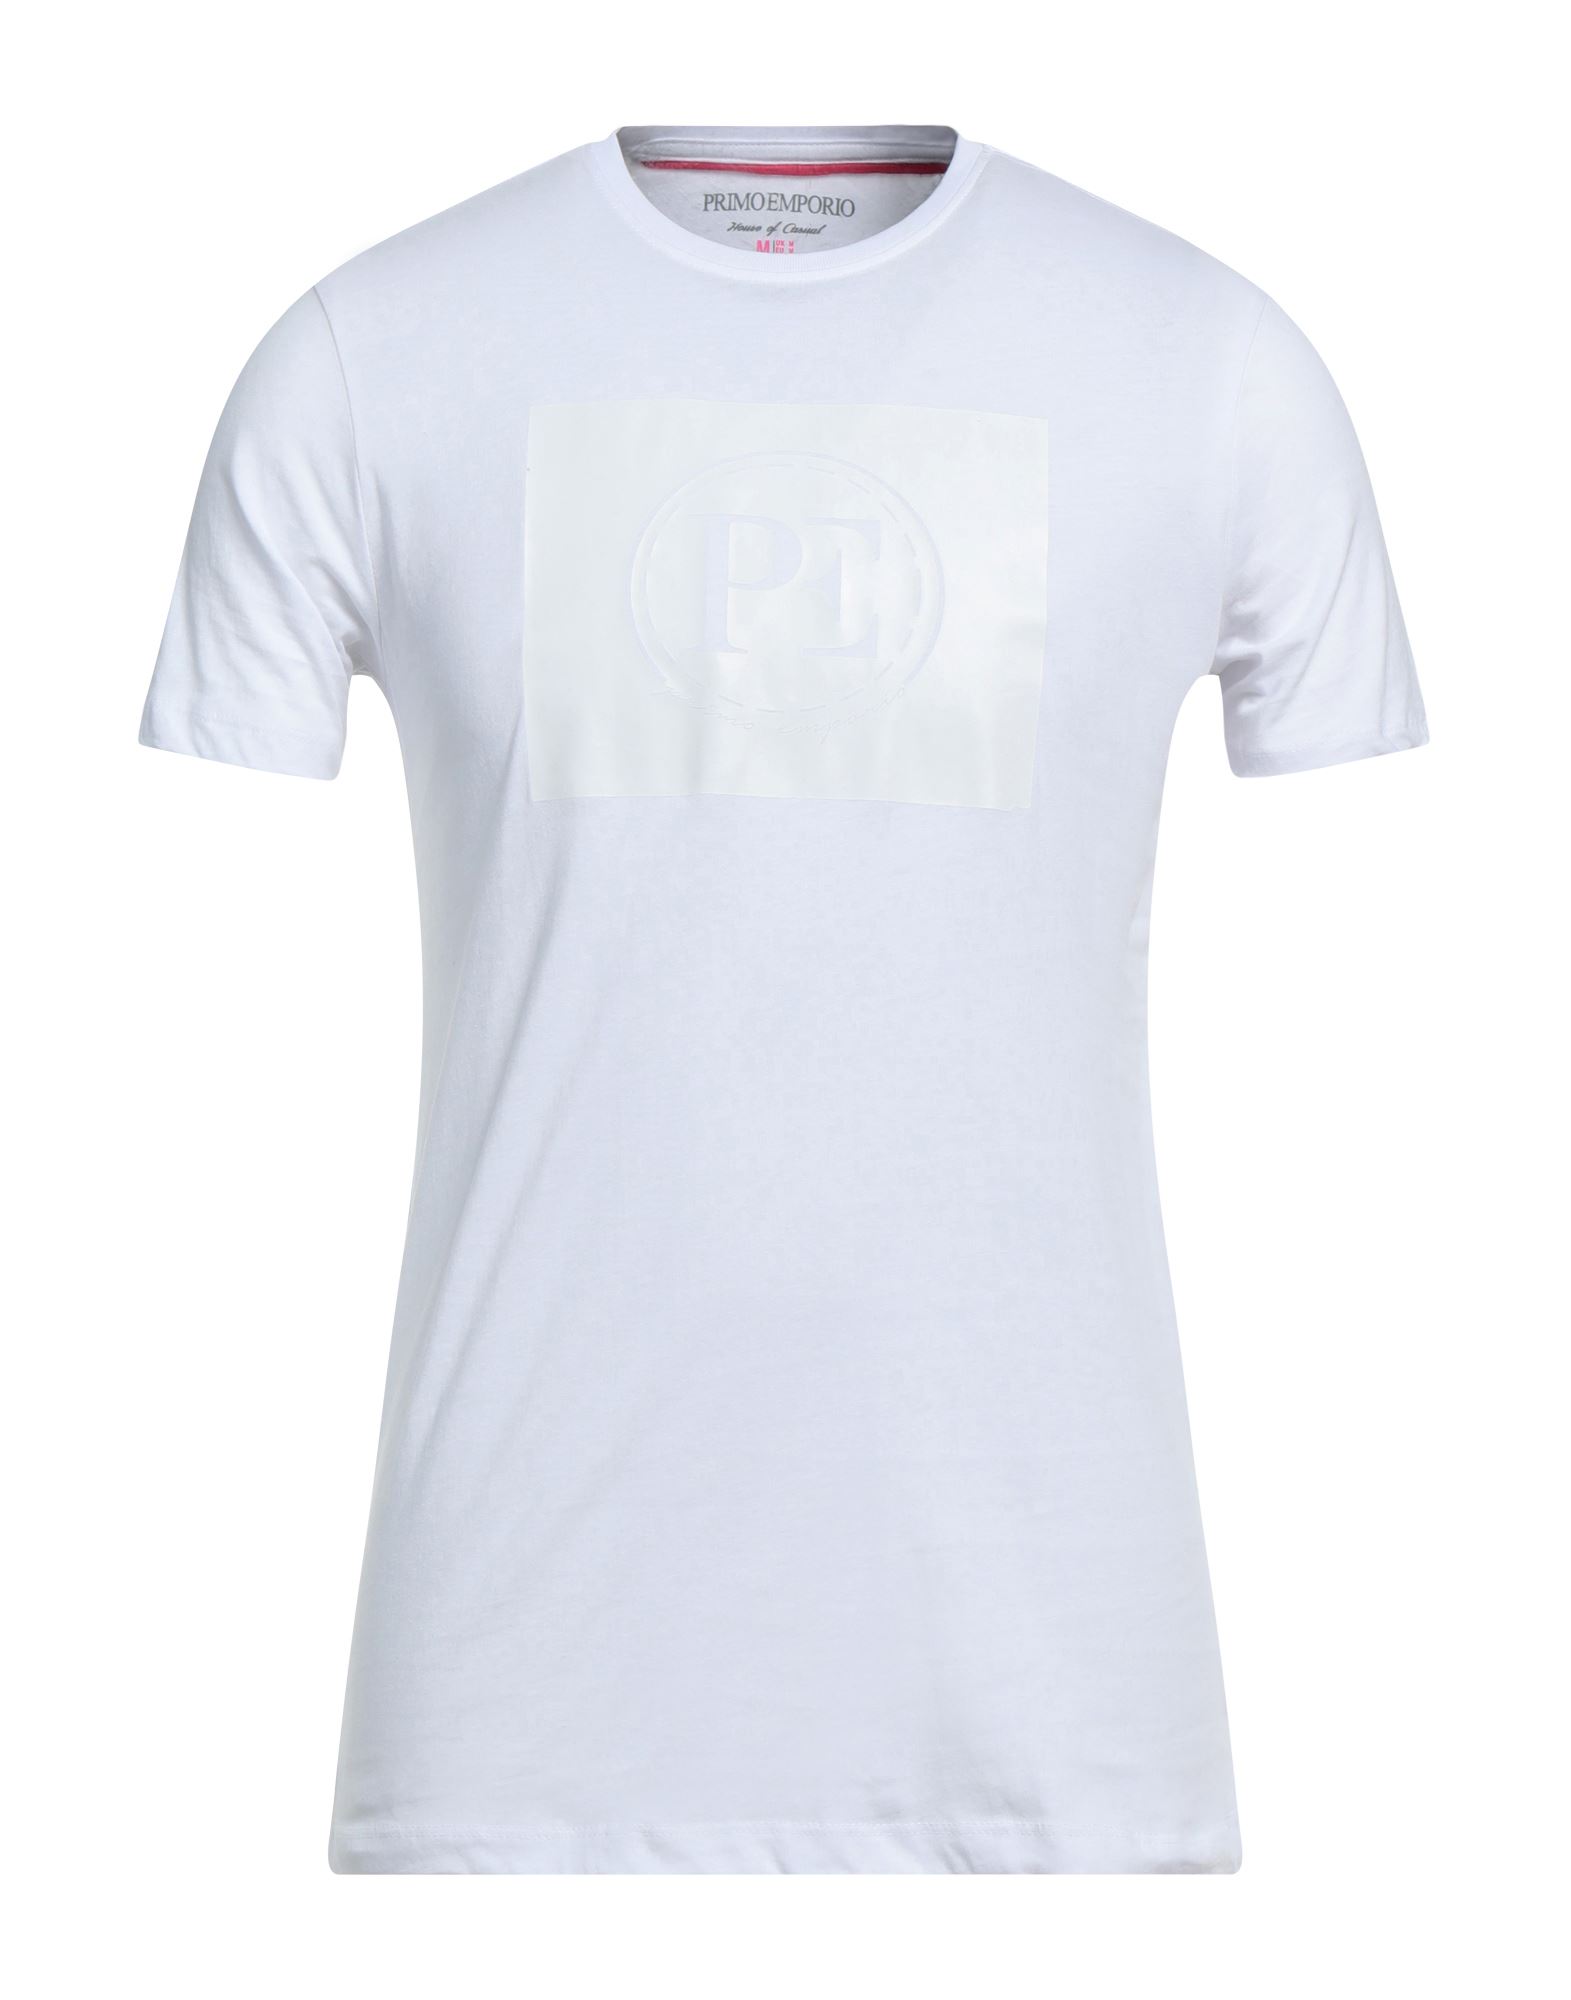 PRIMO EMPORIO T-shirts Herren Weiß von PRIMO EMPORIO